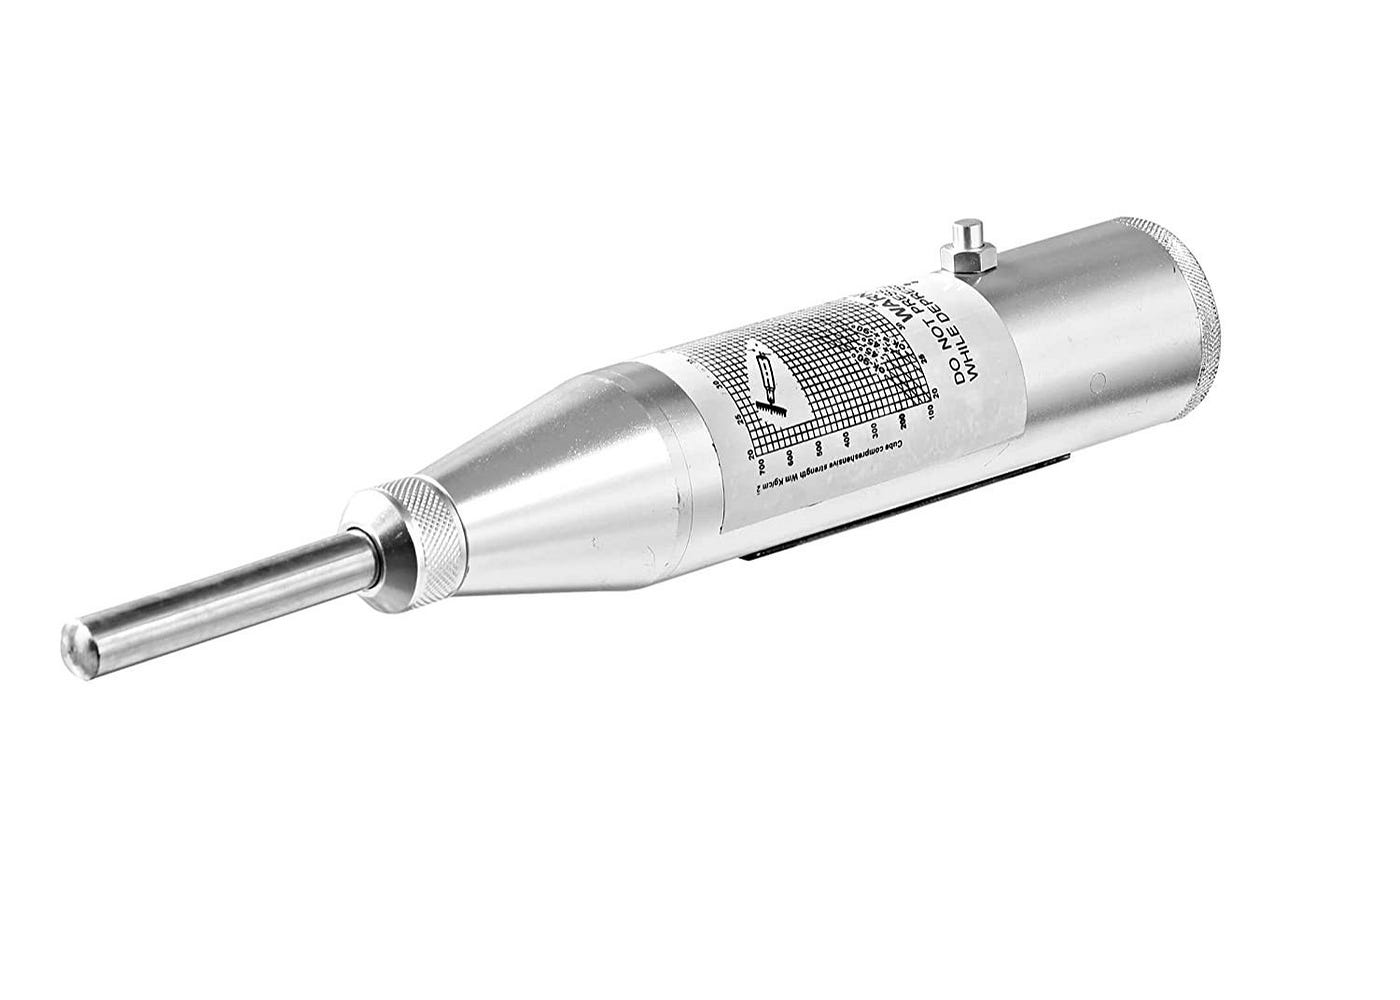 Rock Rebound Test Hammer Tools 50-194 N/mm2 Compressive Strength NDT Tester